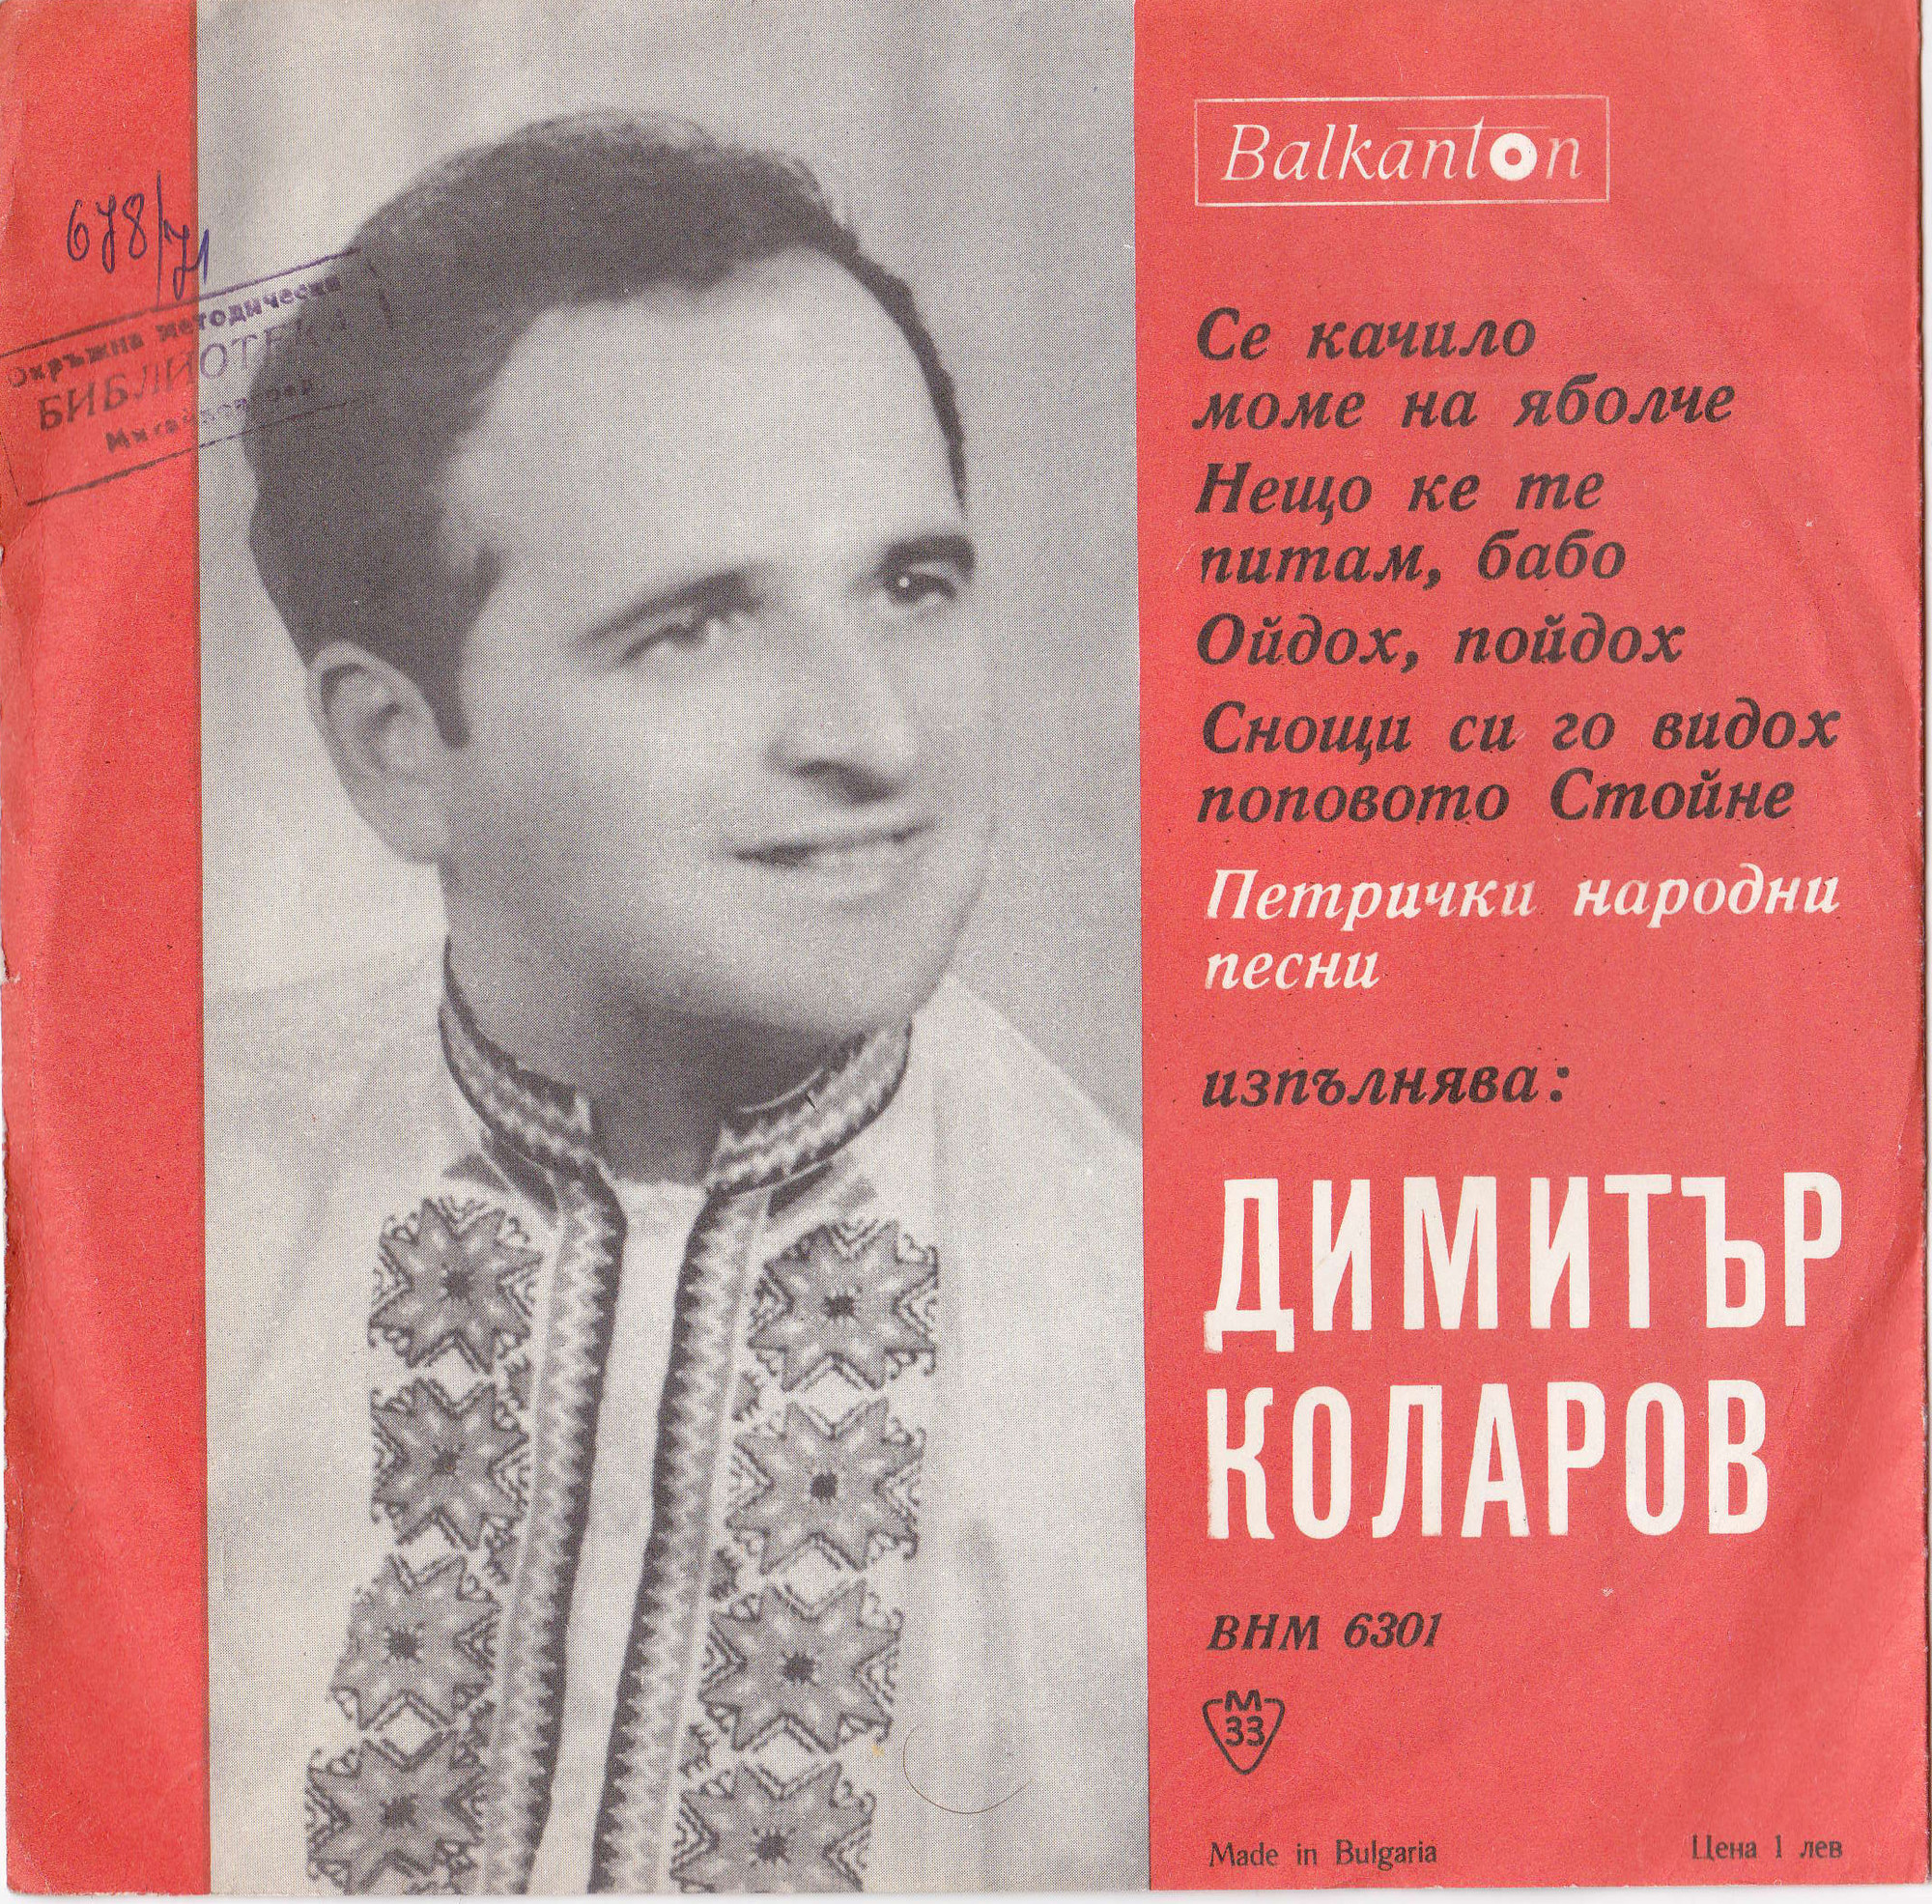 Димитър Коларов - Петрички народни песни